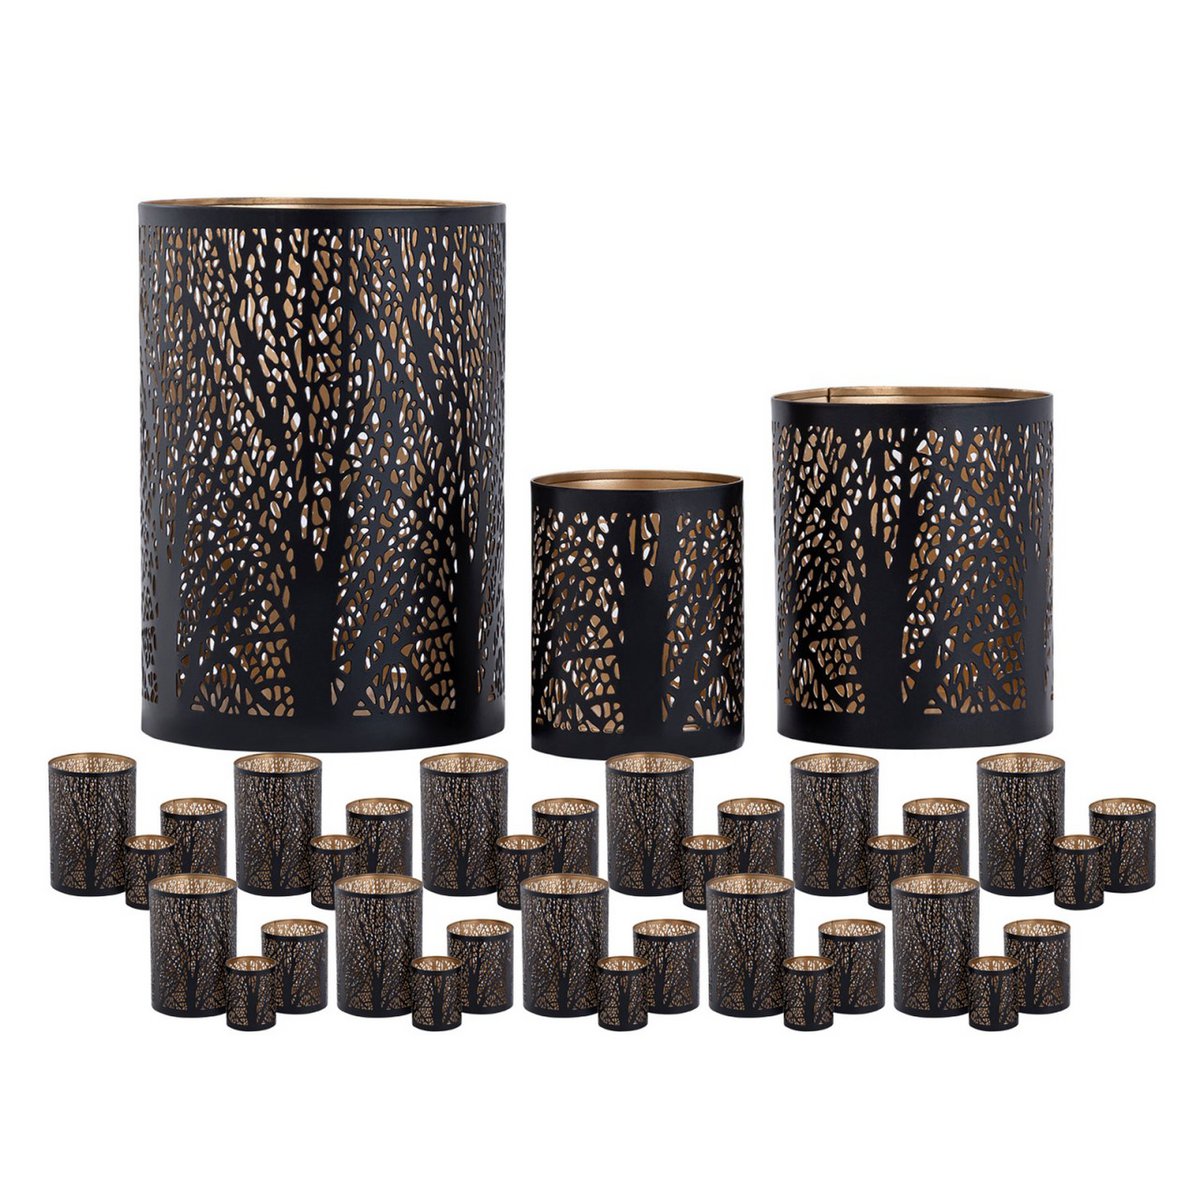 Windlicht 3er Set Masterbox 12x 3teilig Kerzenständer Forest Teelichthalter rund schwarz gold